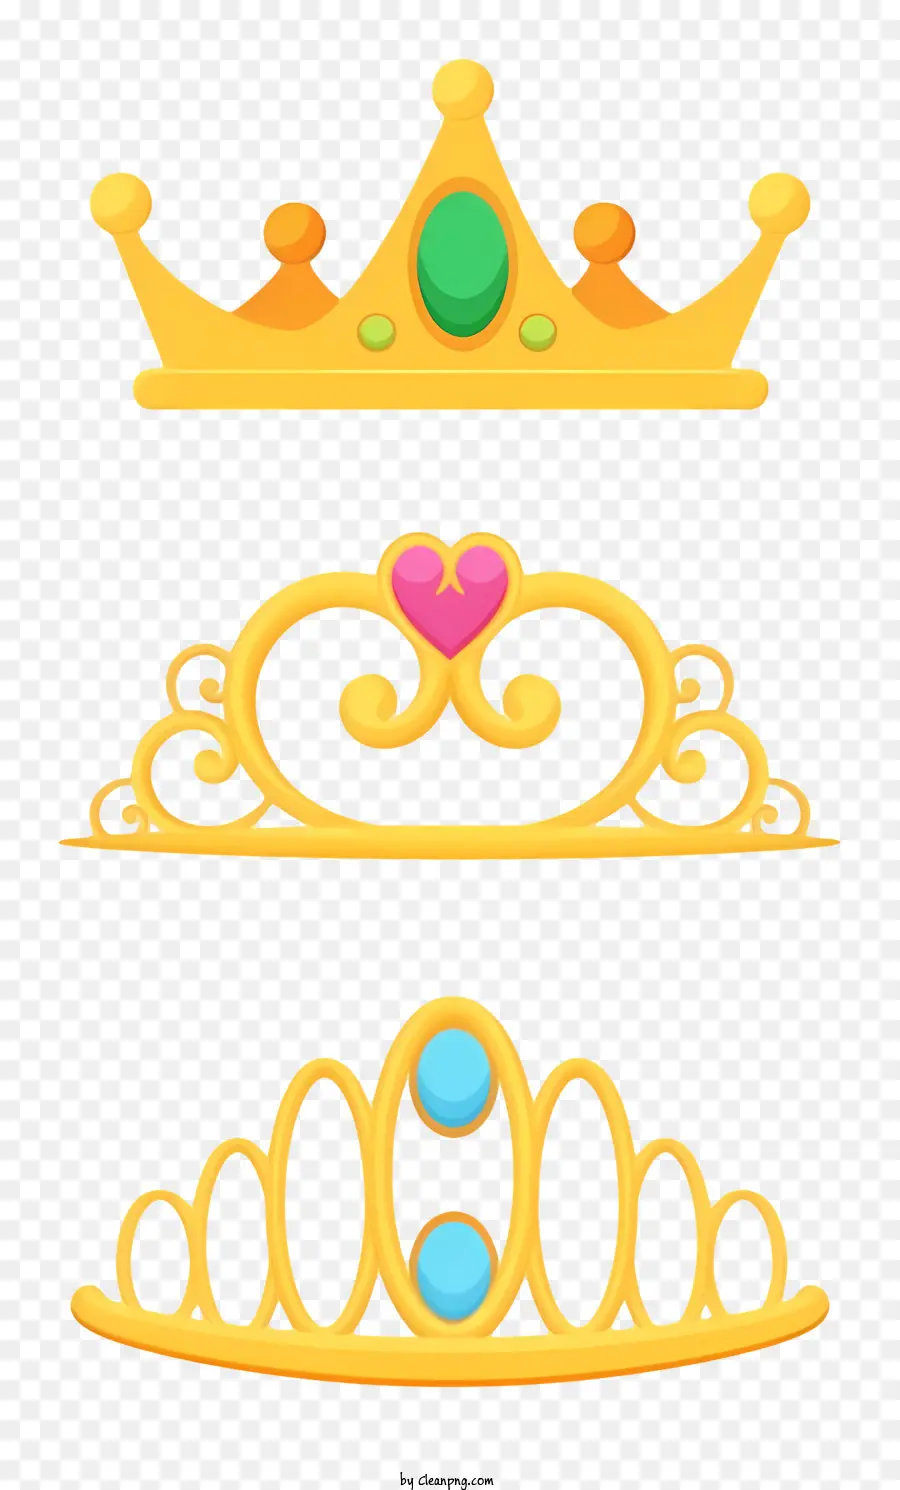 vương miện vàng trang sức vương miện hình dạng vương miện kích thước vương miện màu vương miện - Ba vương miện vàng có hình dạng, kích thước và màu sắc khác nhau